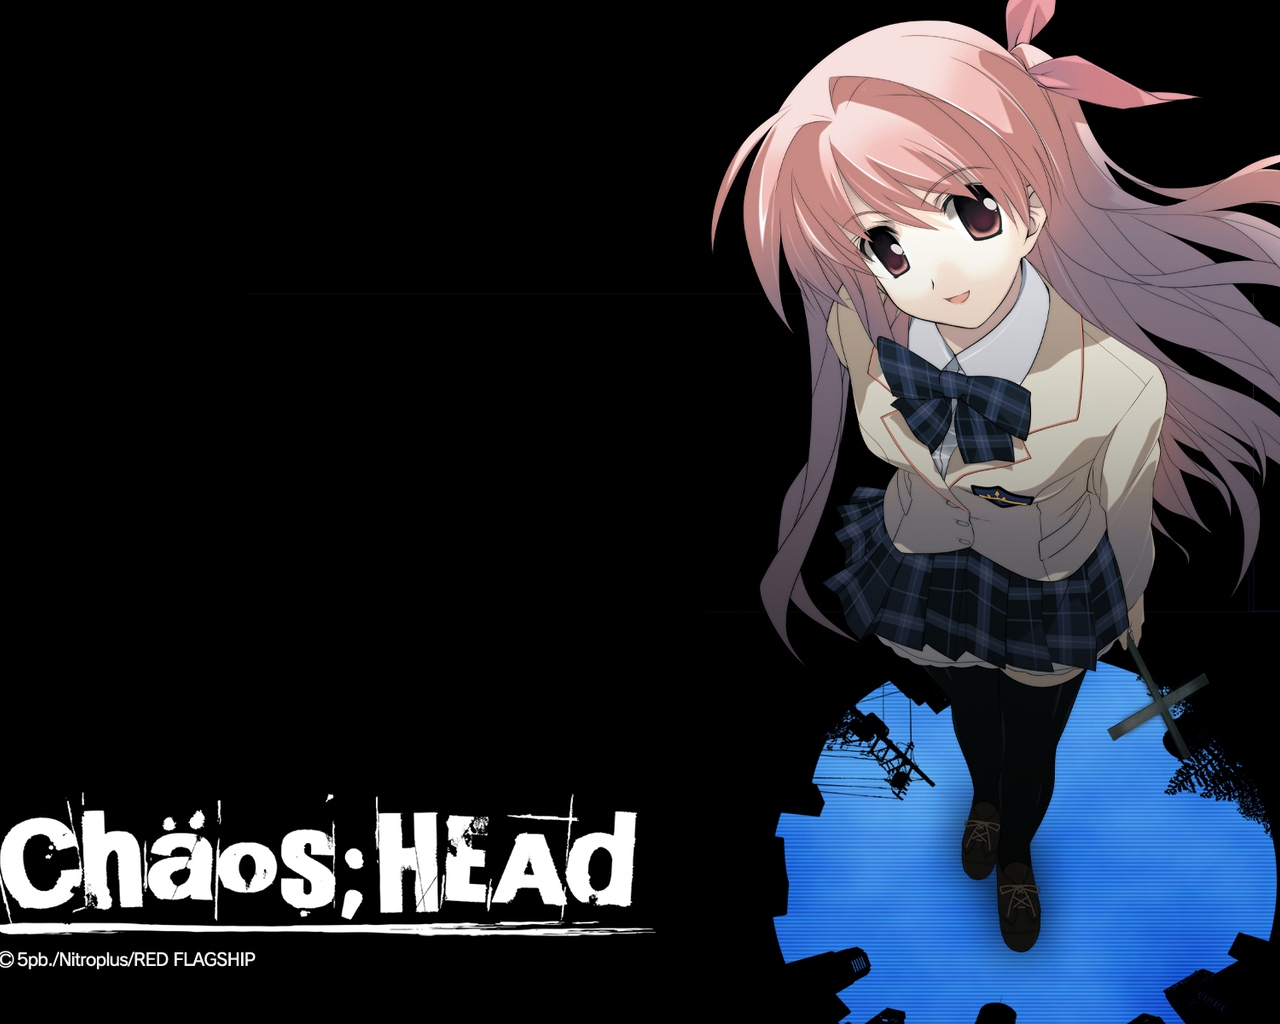 壁紙 Chaos Head アニメ ダウンロード 写真